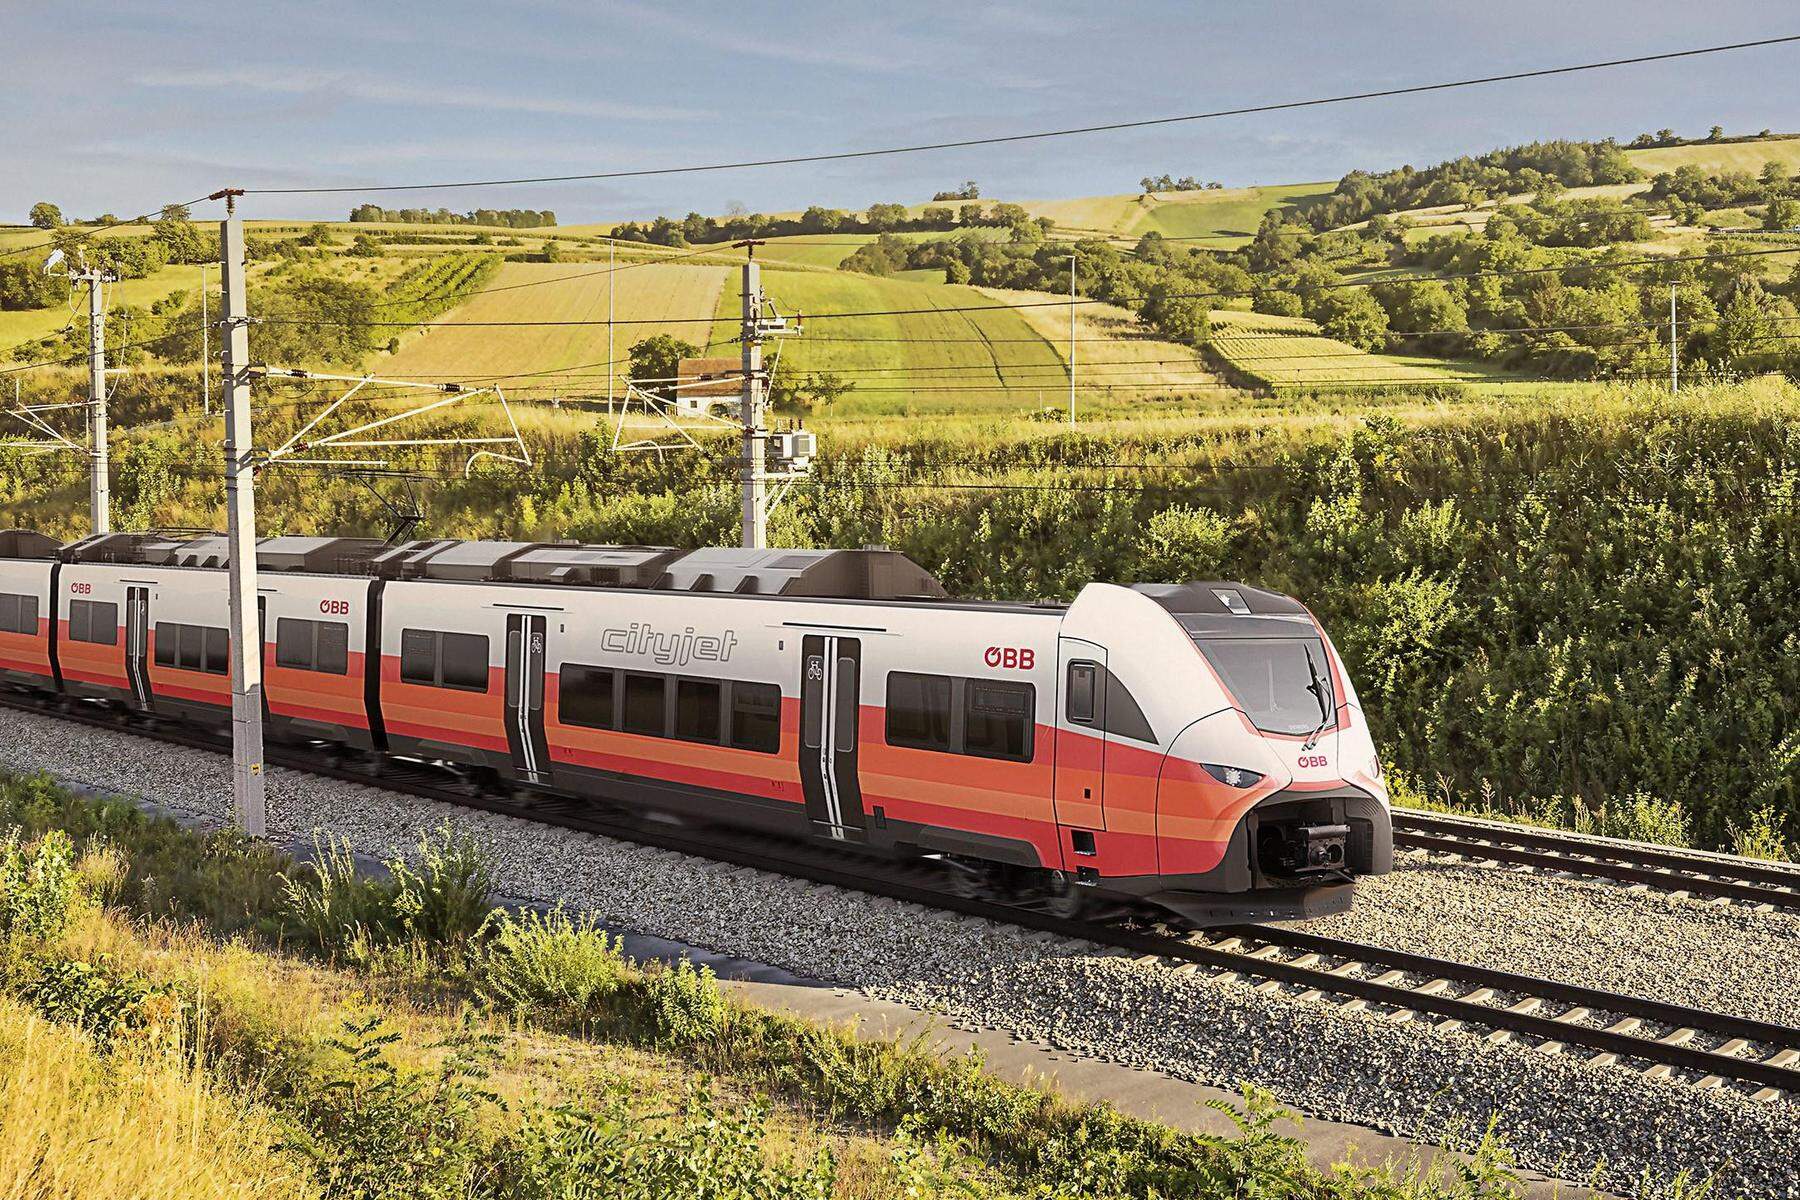 70 Garnituren von Siemens | Breiter konstruiert, zusätzliche Fahrwerke: Das können die neuen ÖBB-Züge